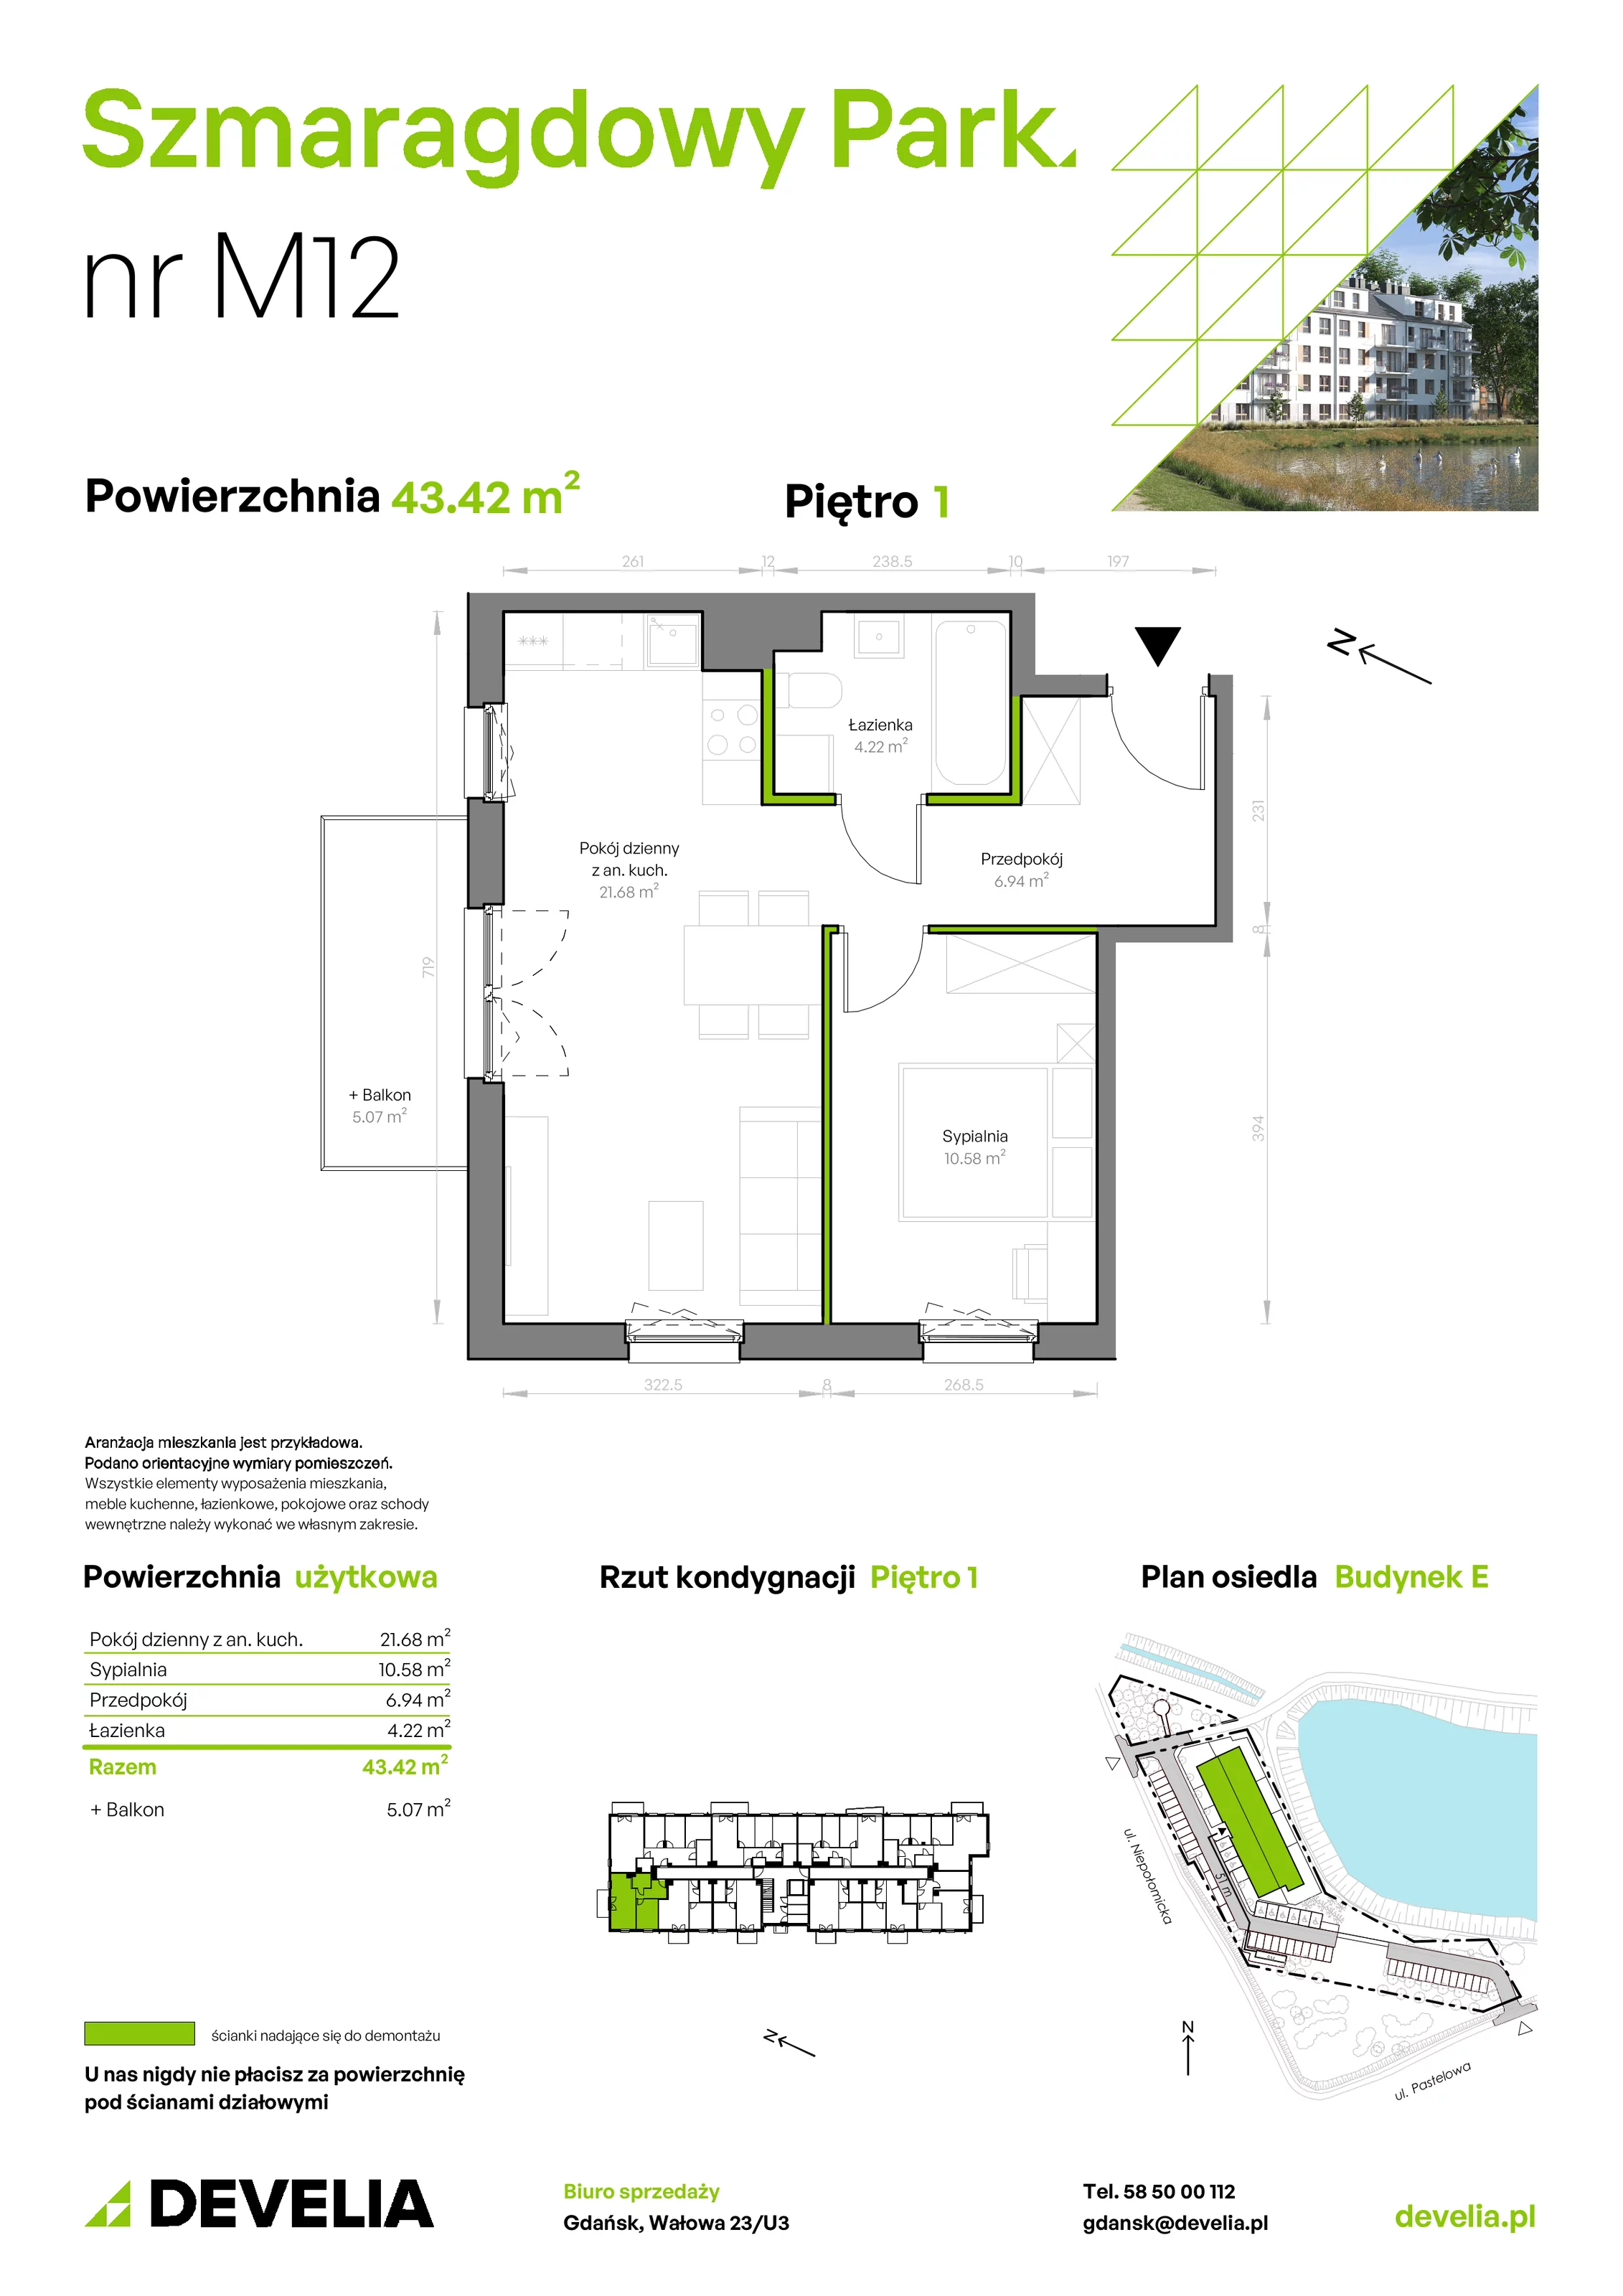 Mieszkanie 43,42 m², piętro 1, oferta nr E/012, Szmaragdowy Park, Gdańsk, Orunia Górna-Gdańsk Południe, Łostowice, ul. Topazowa 2